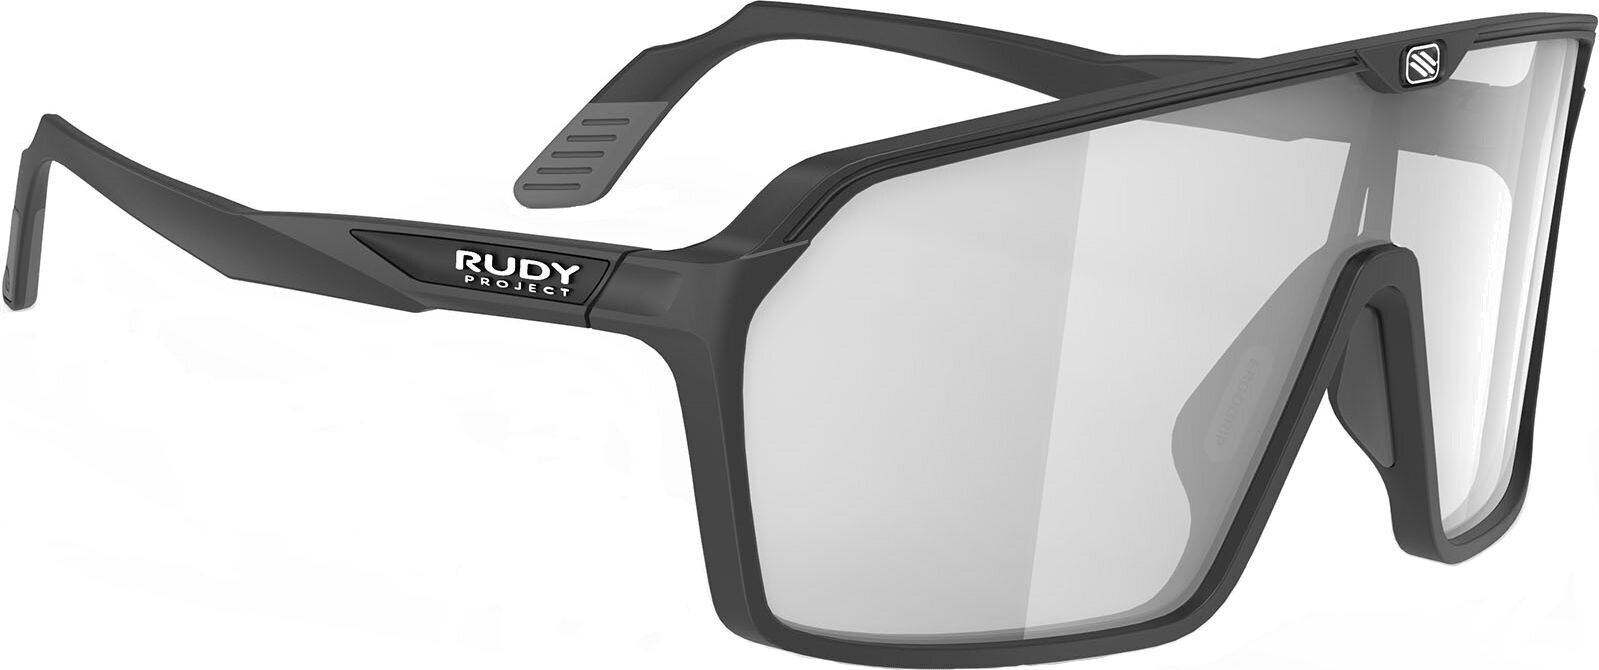 Lifestyle cлънчеви очила Rudy Project Spinshield Lifestyle cлънчеви очила